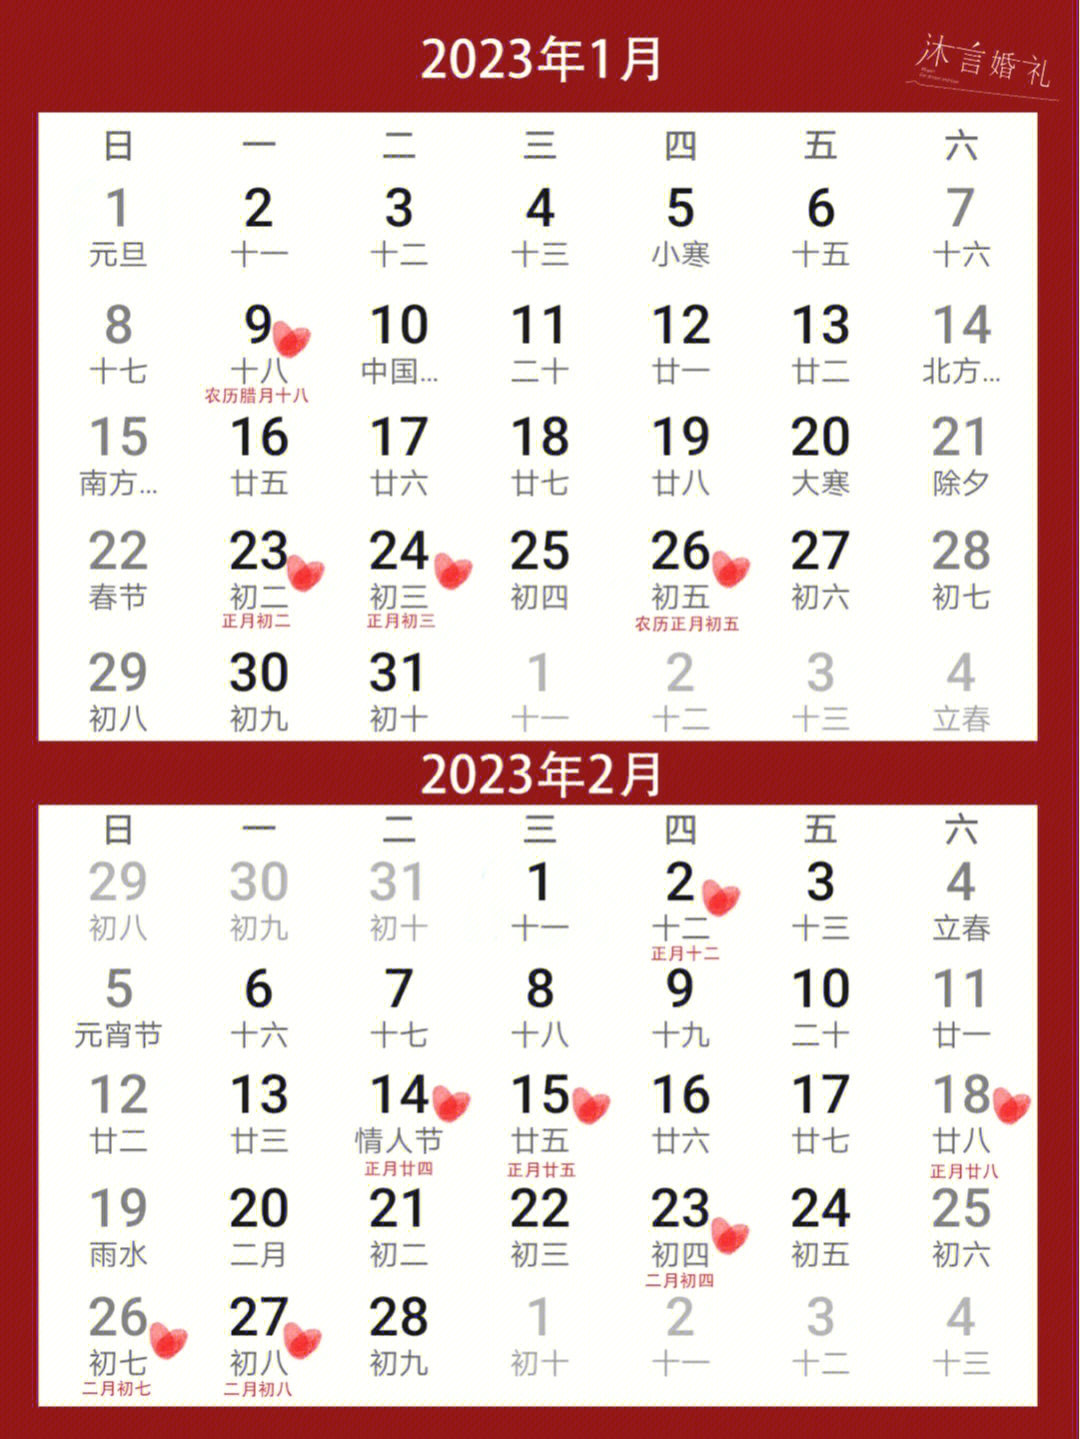 元旦:2022年12月31日至2023年1月2日放假调休,共3天